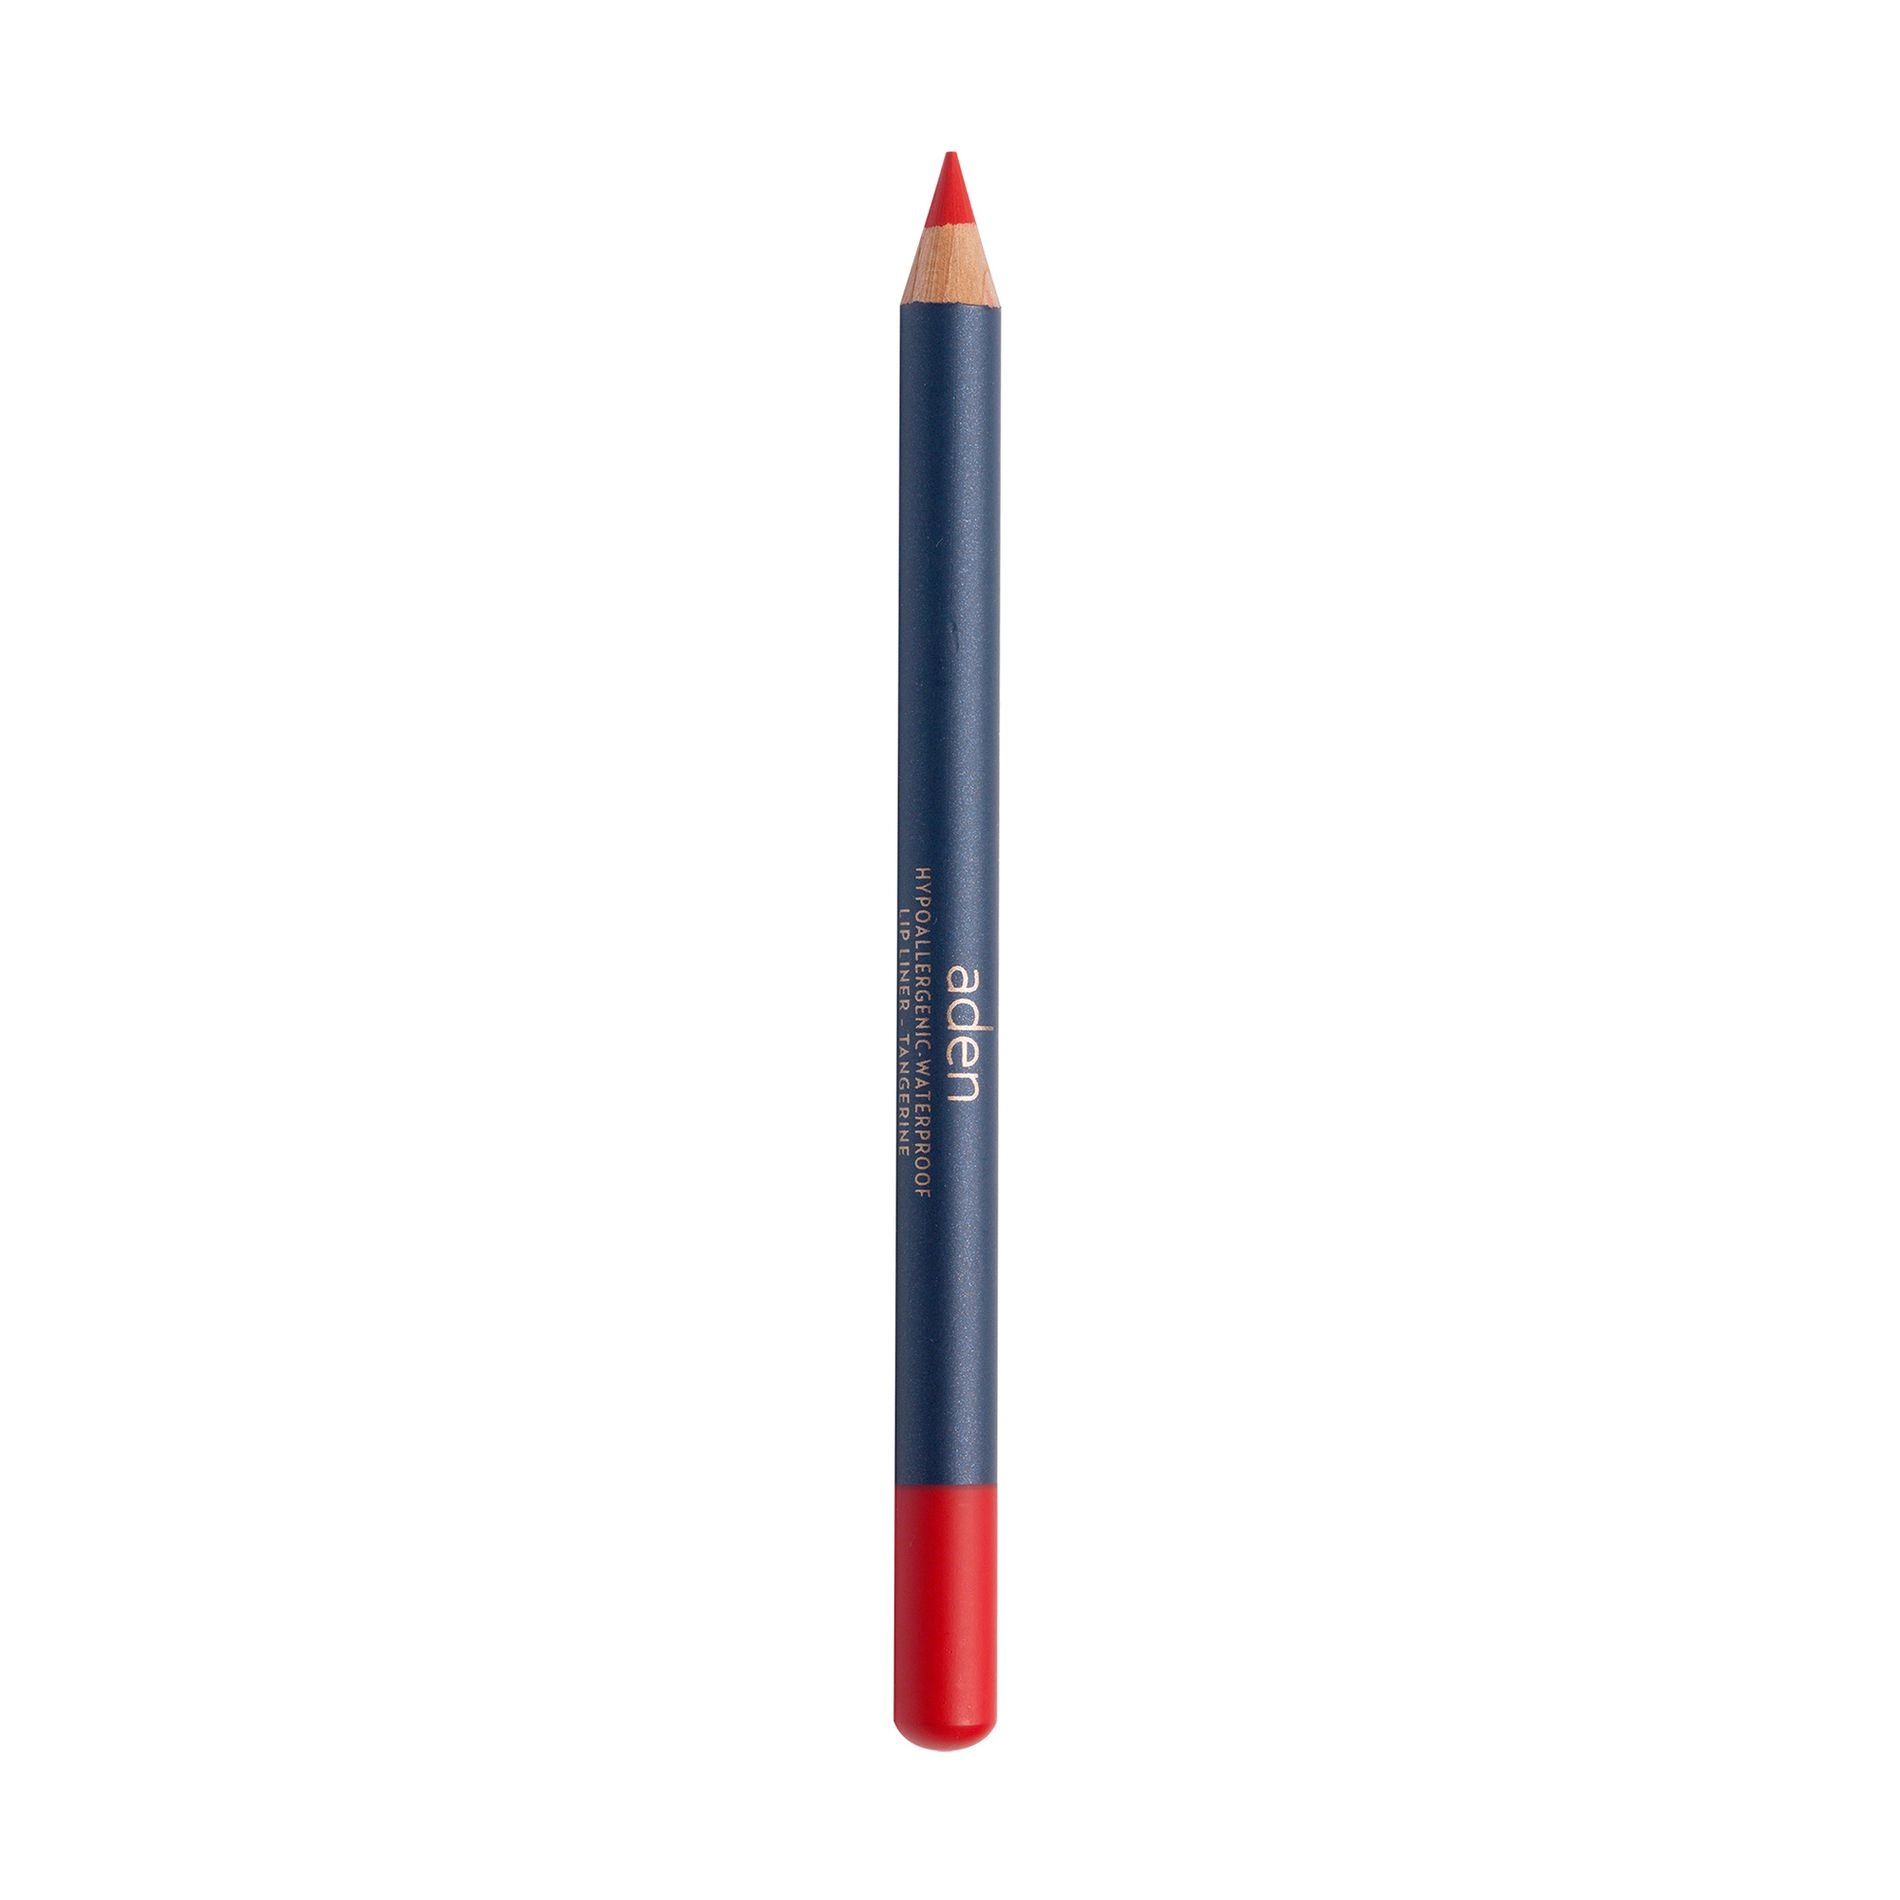 Aden Карандаш для губ Lipliner Pencil 39 Tangerine, 1.14 г - фото N1